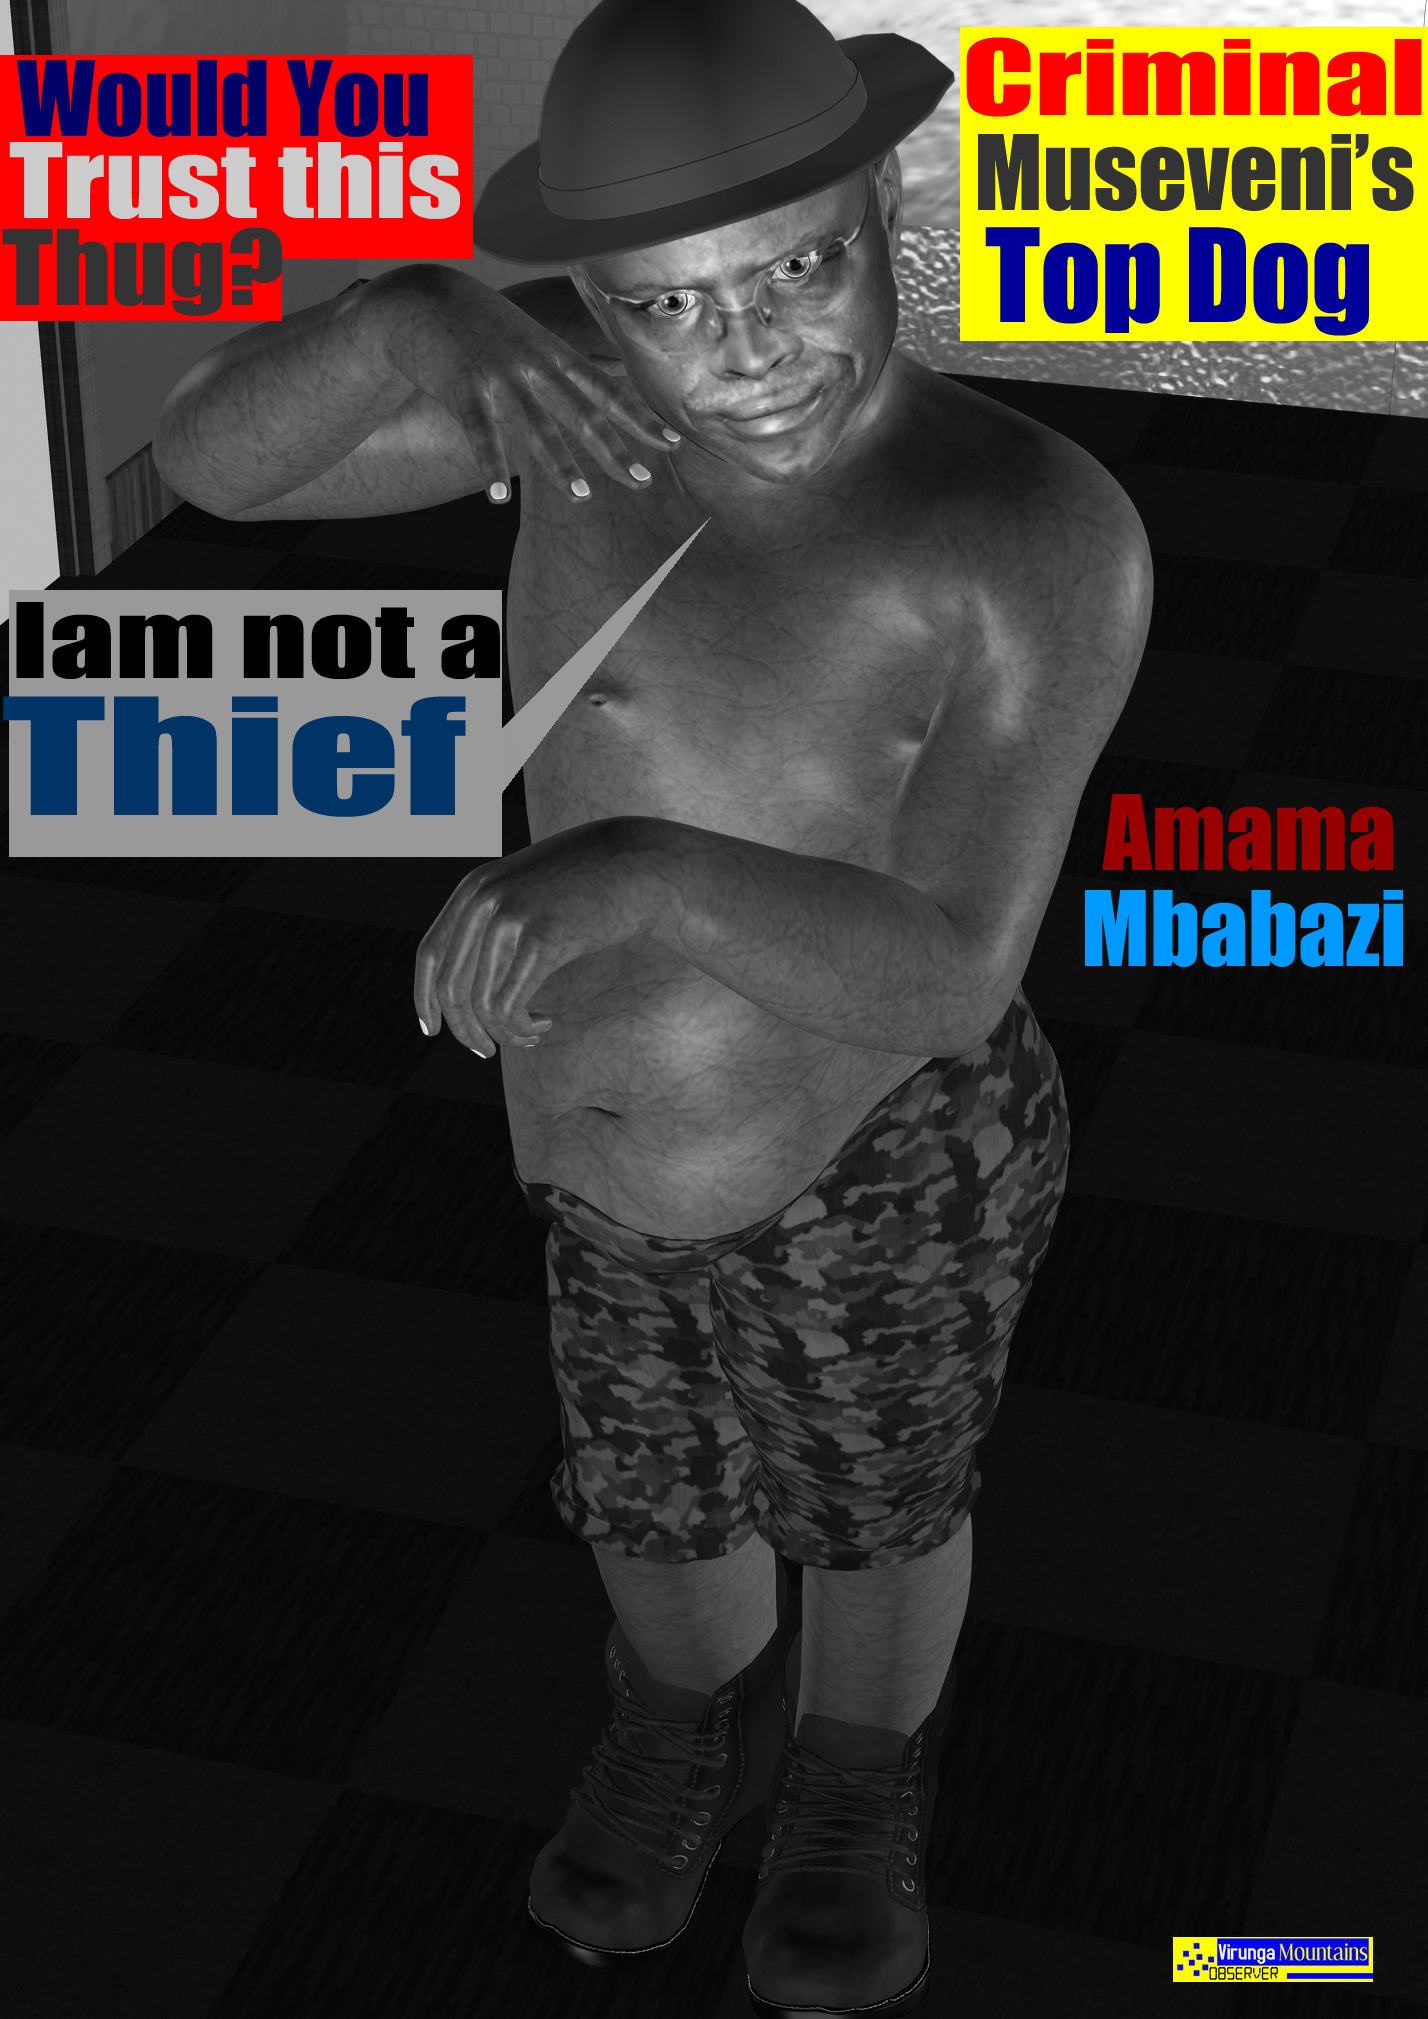 Amama Mbabazi